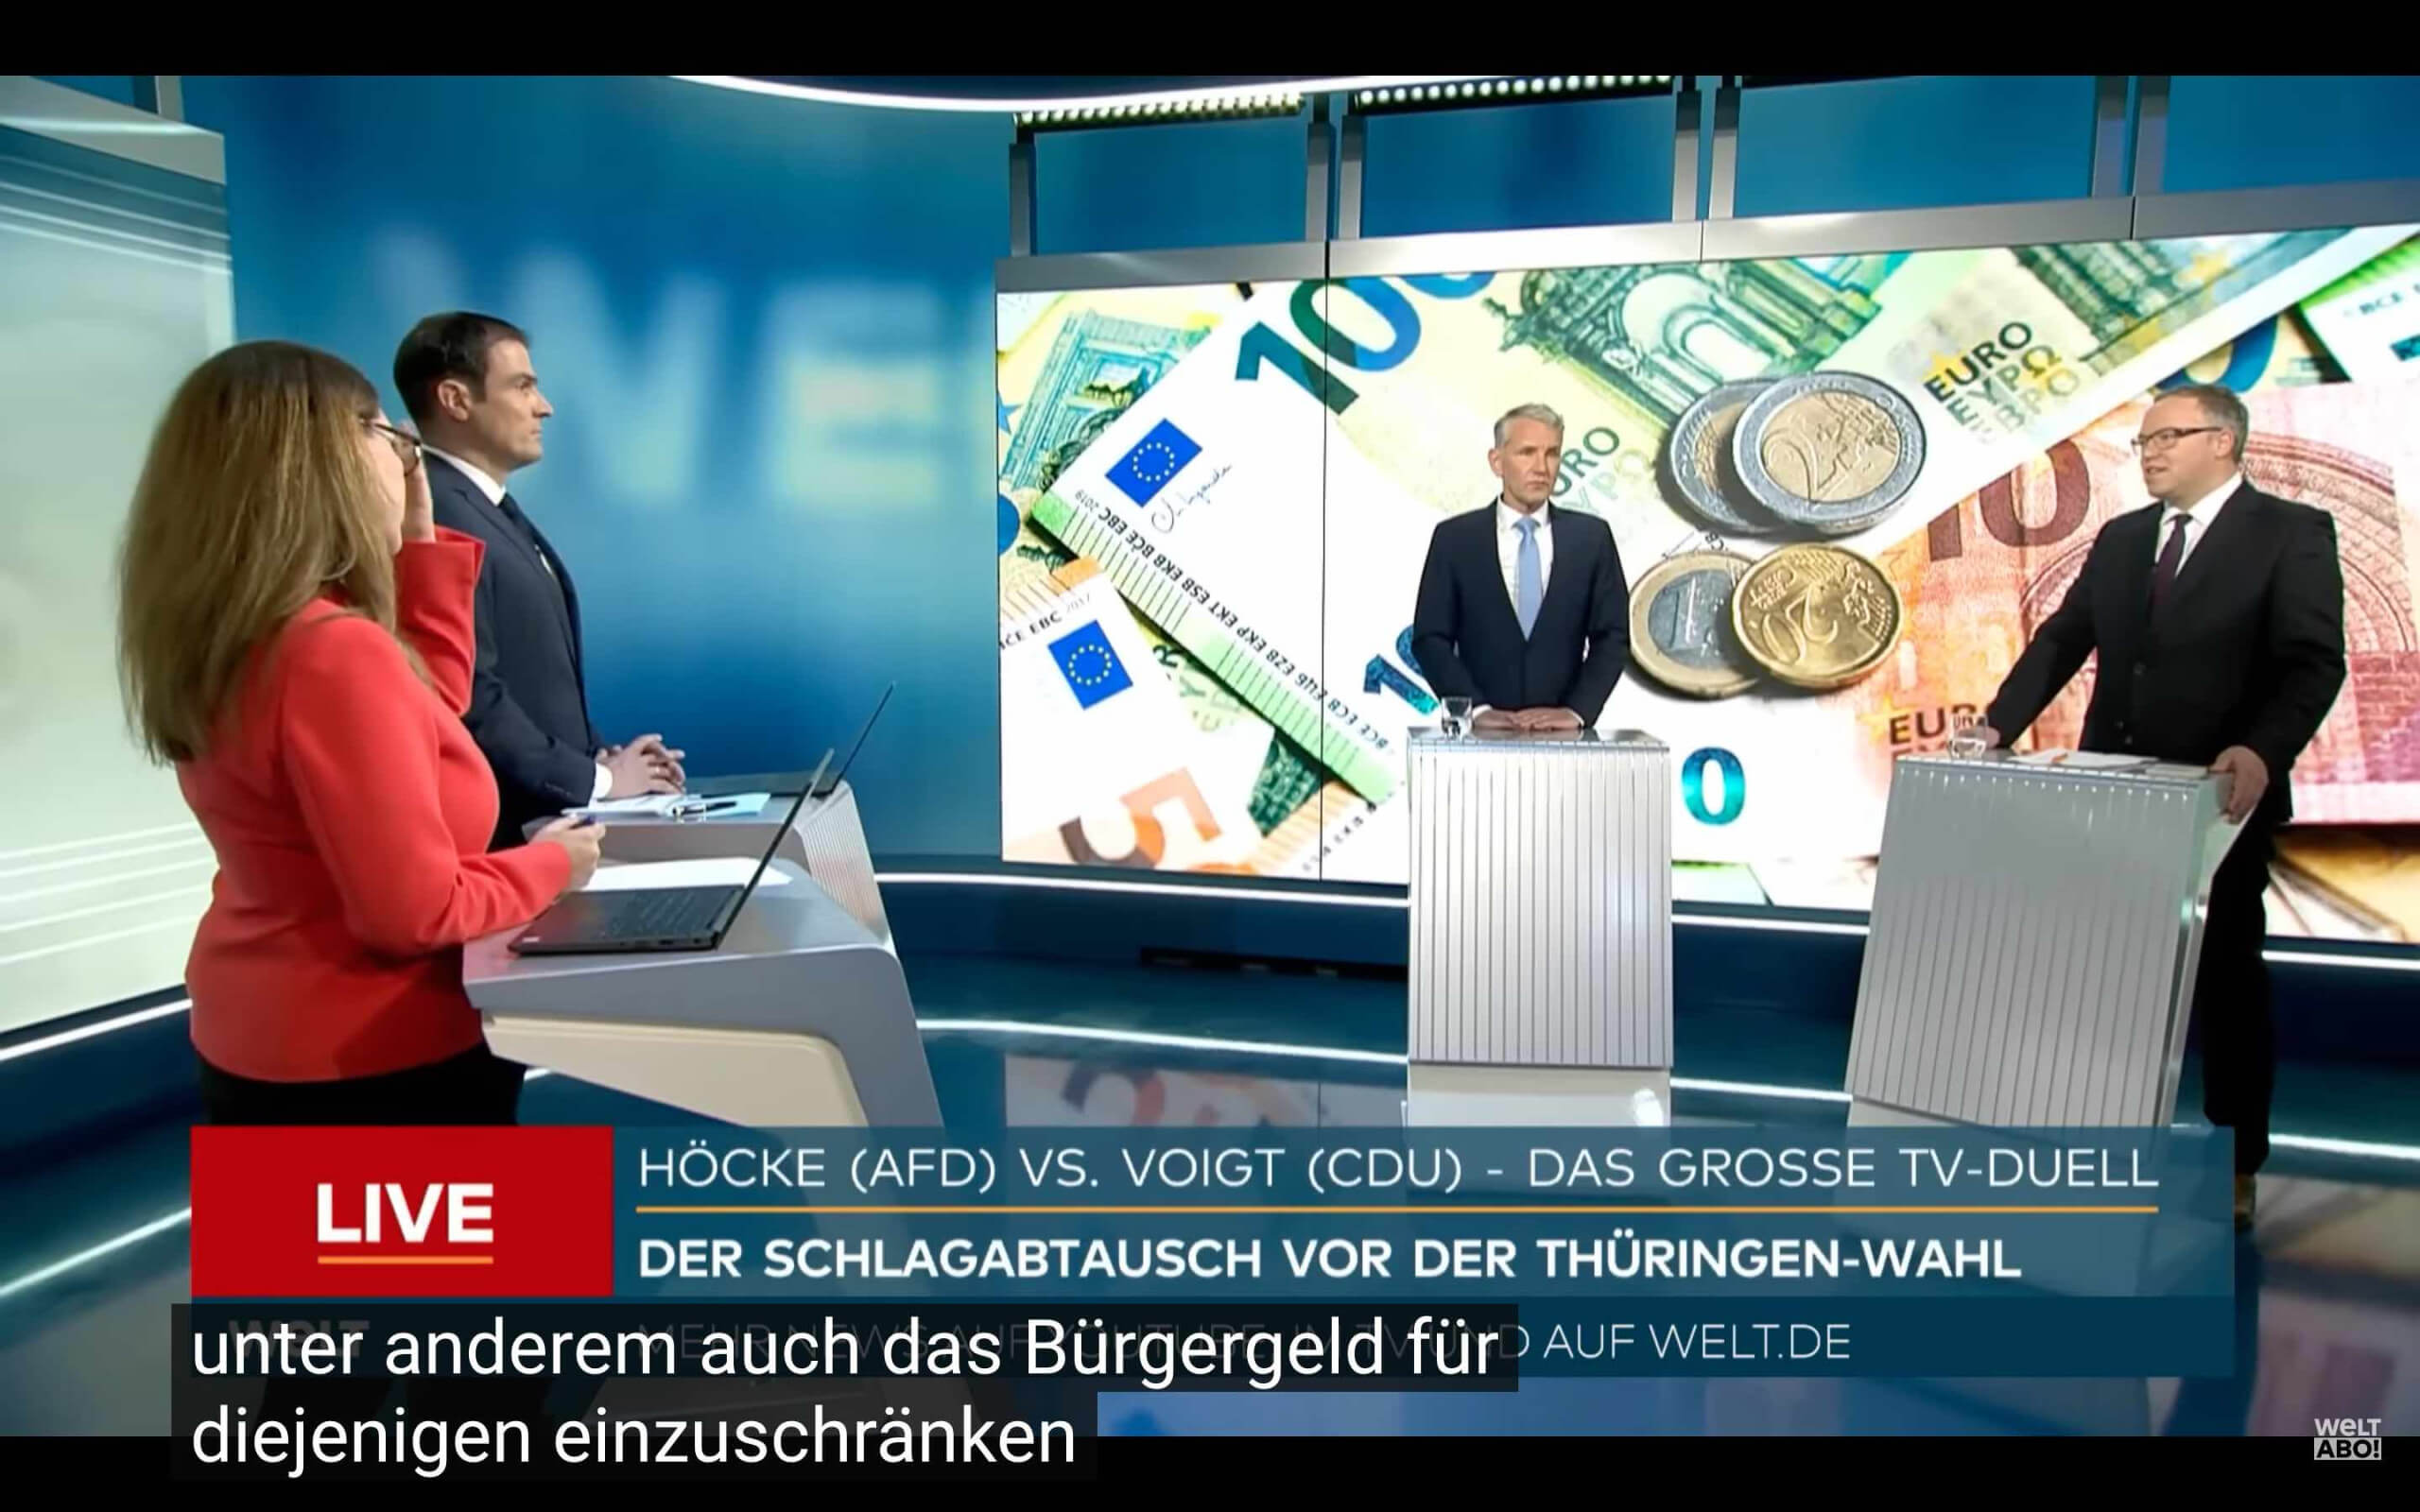 Screenshot des Youtube-Videos von Welt TV zum TV-Duell zwischen Höcke (AfD) und Voigt (CDU).